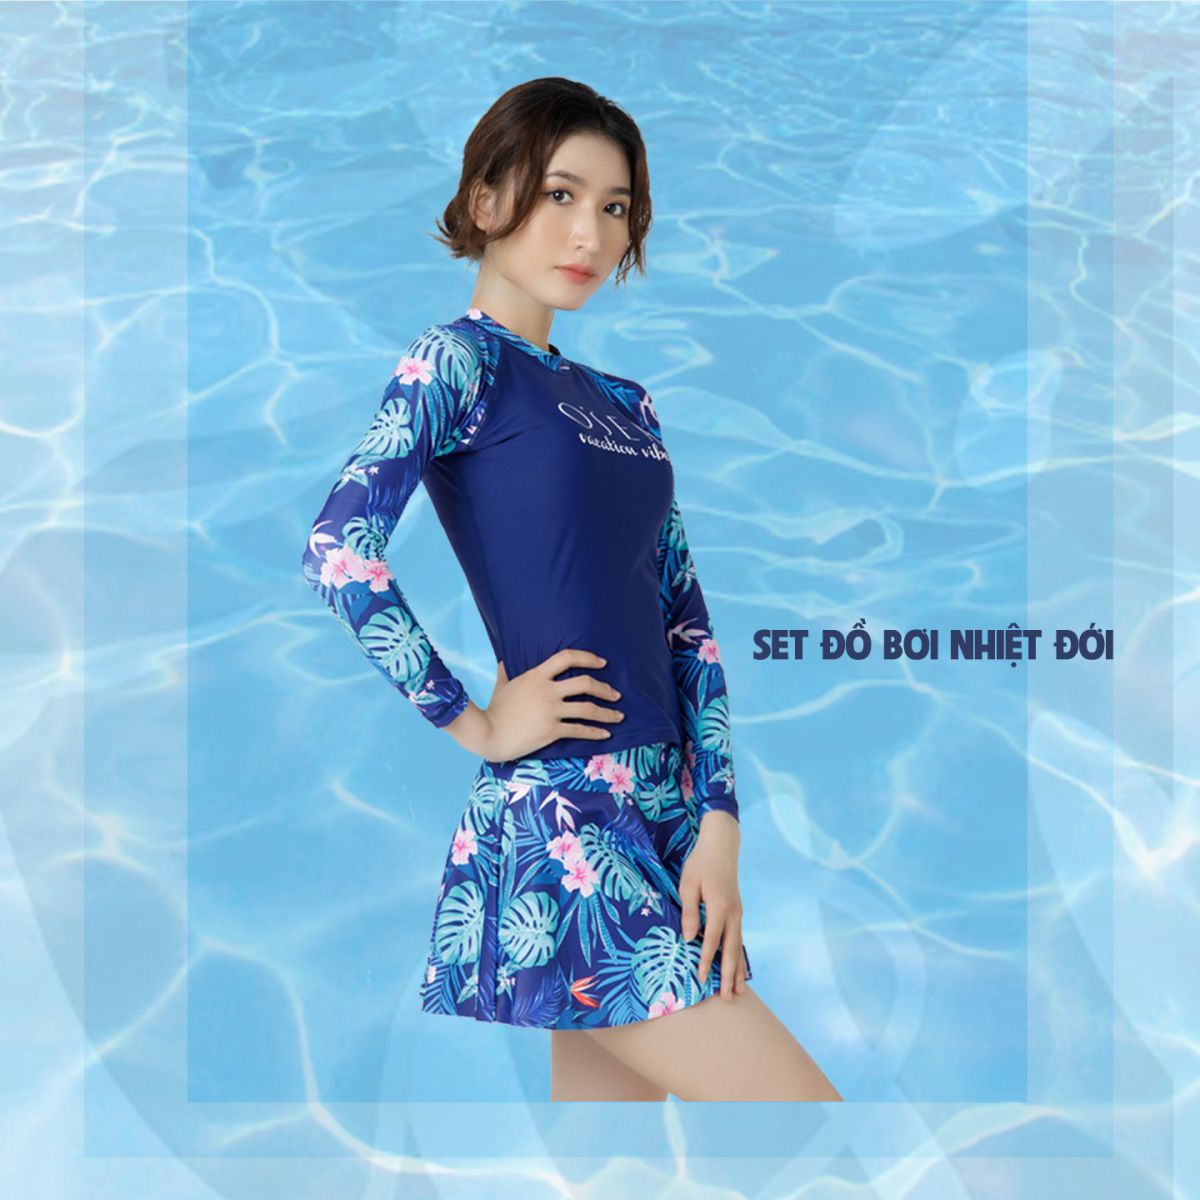 Đồ Bơi Nữ Kín Đáo Đi Biển (DR)- Bikini Liền Thân Dạng Váy Giấu Bụng Tôn Dáng  - Bộ đồ bơi | ThờiTrangNữ.vn